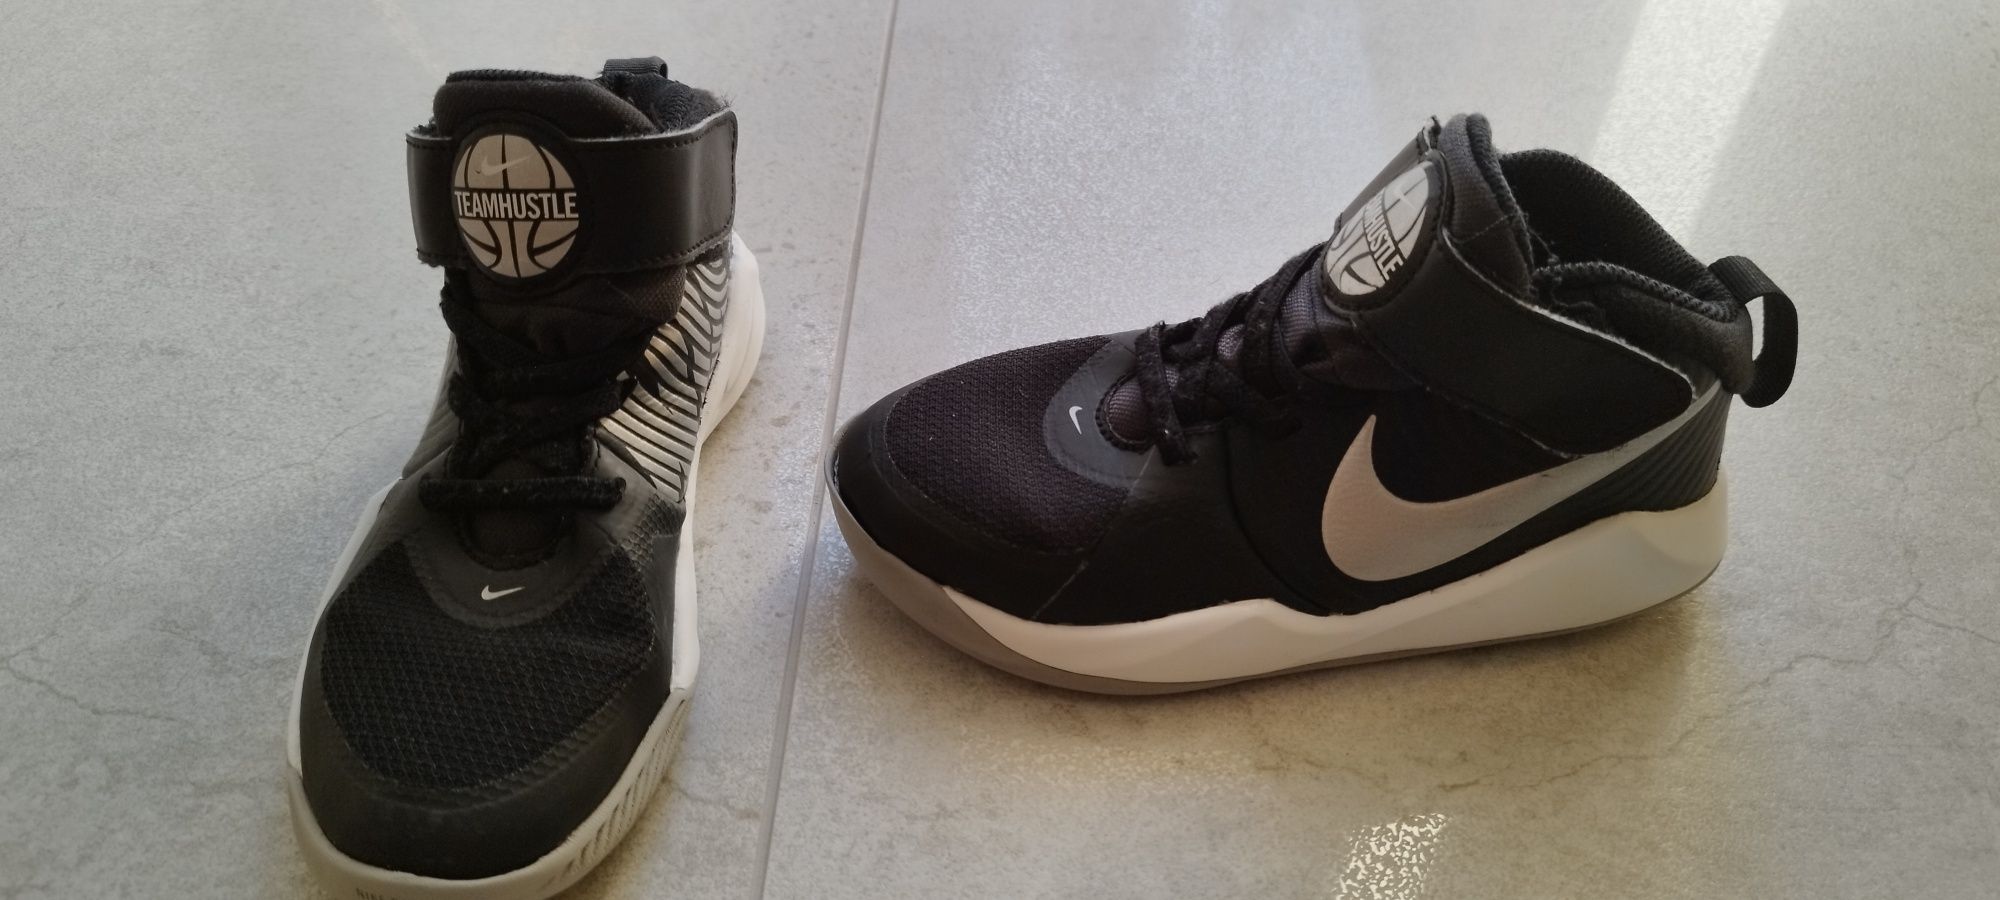 Buty dziecięce Nike do koszykówki wysoka cholewka rozmiar 30 C12,5 bdb